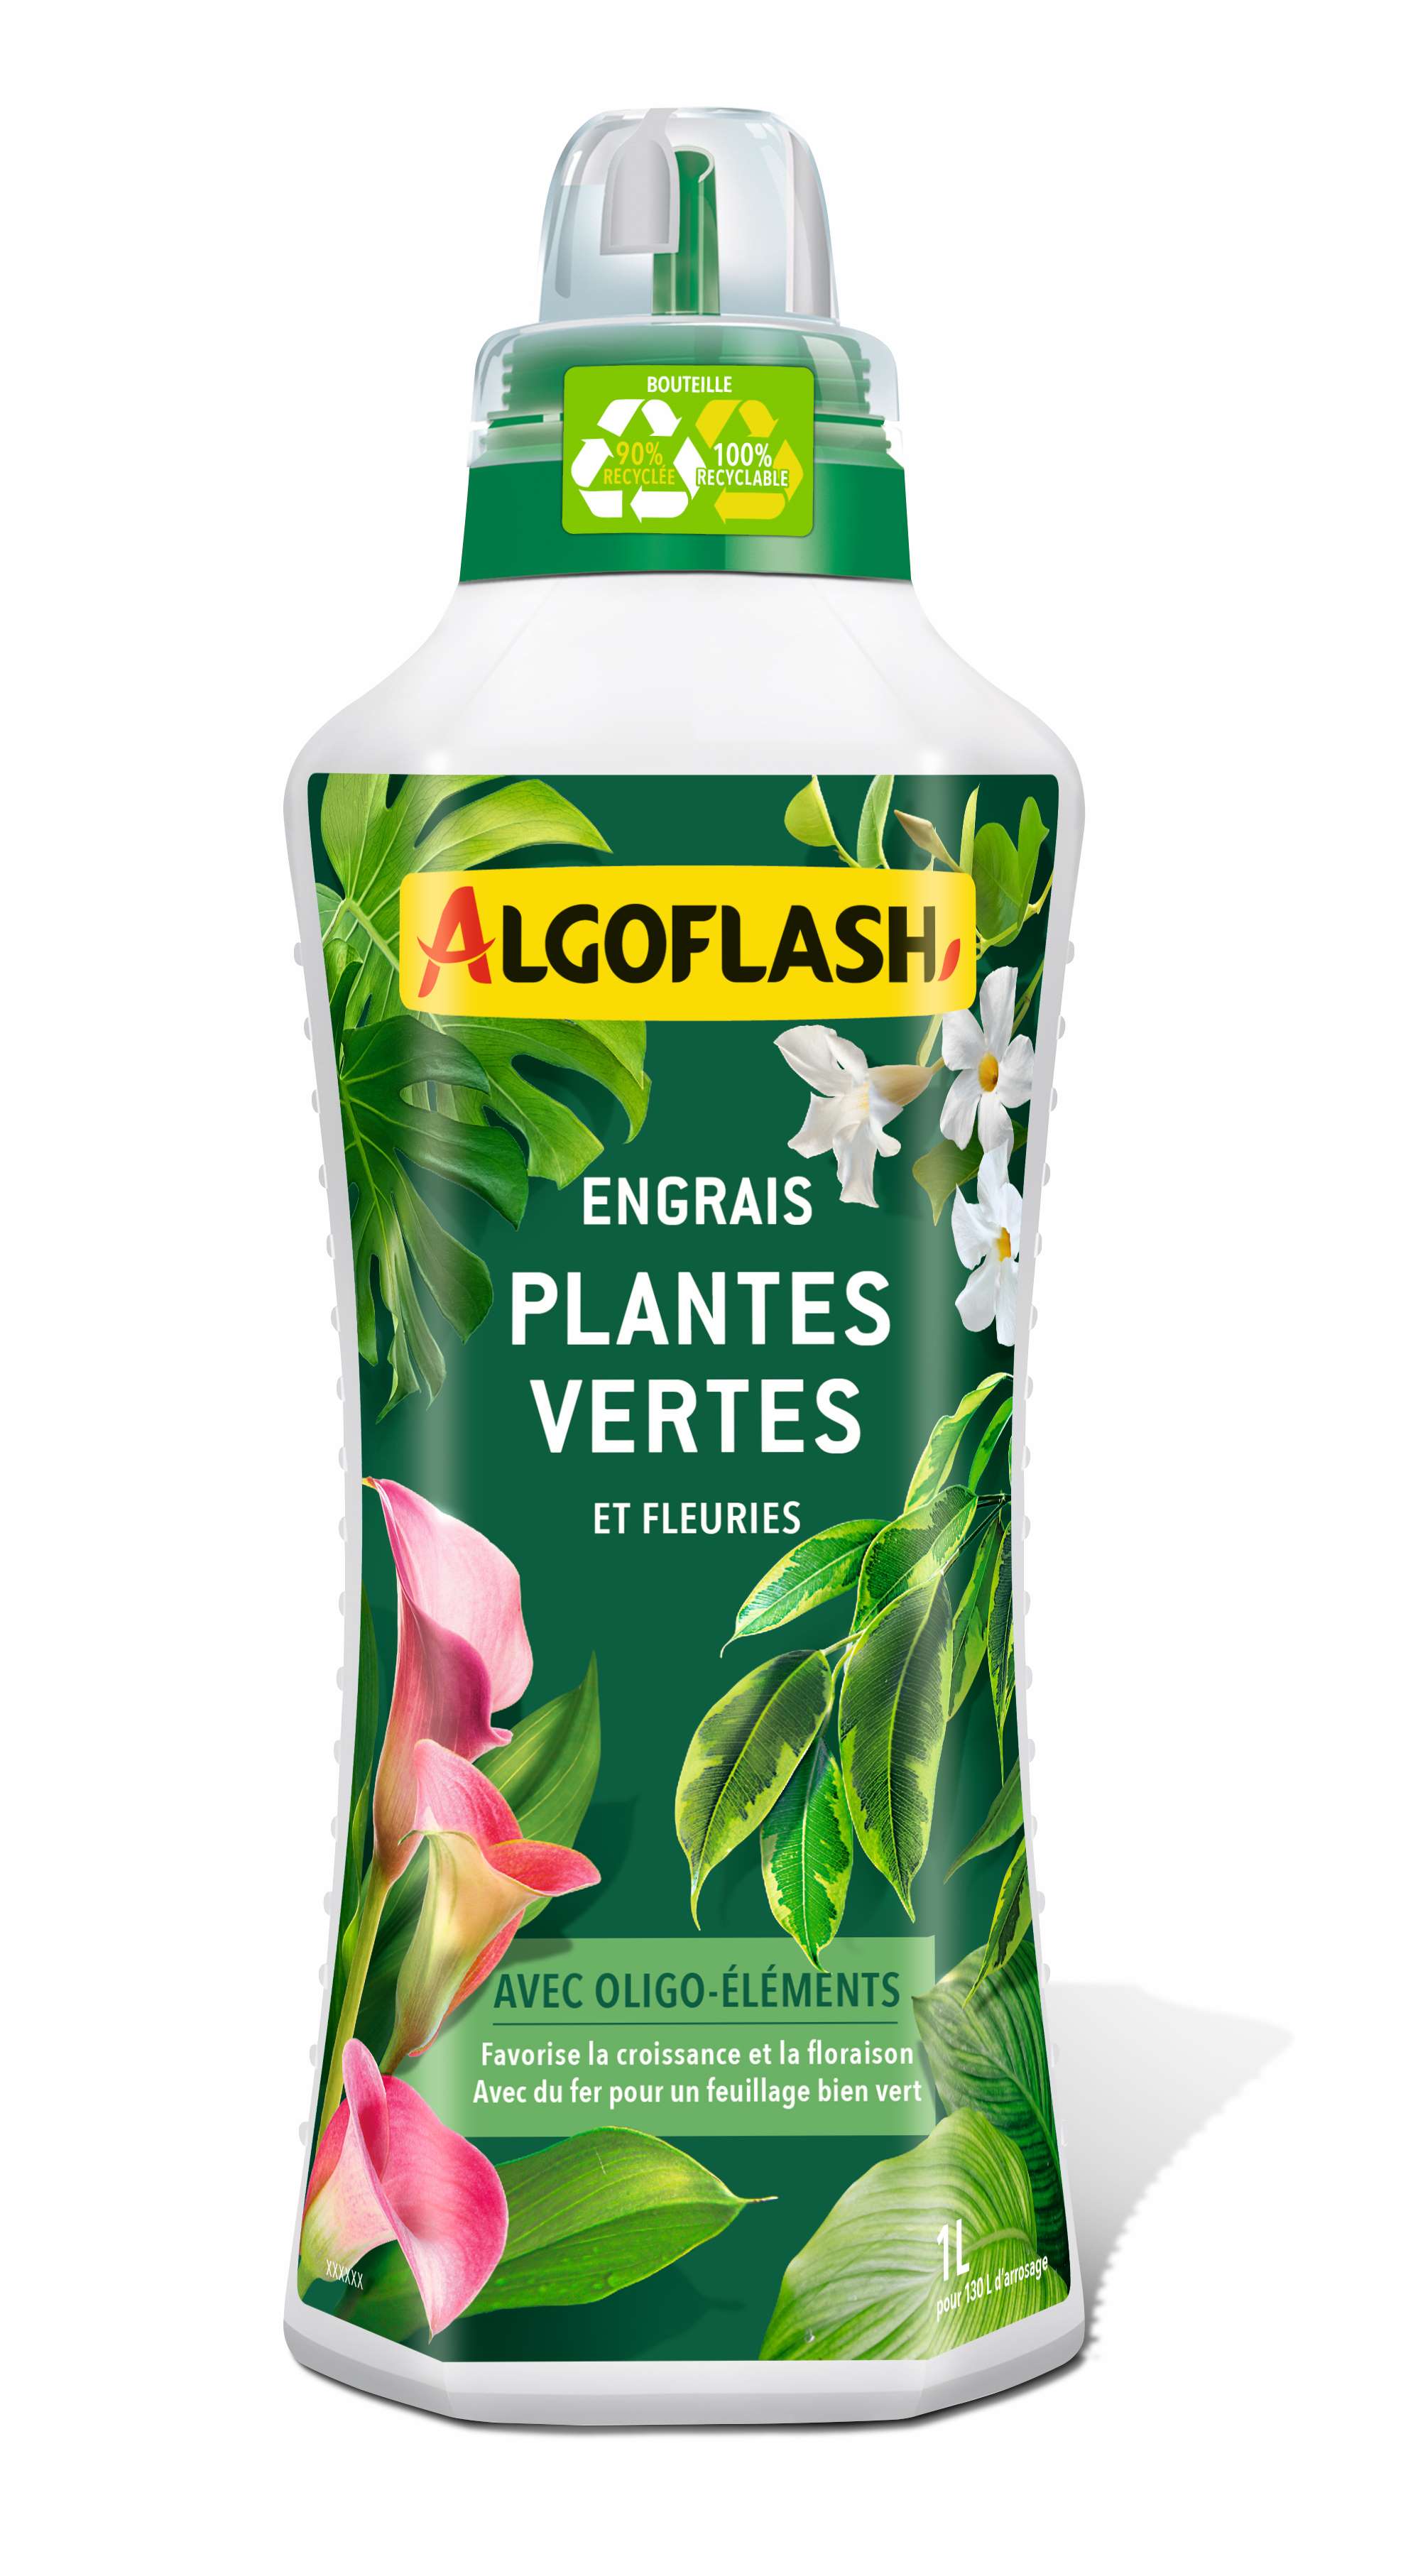 Algoflash - Engrais Plantes Vertes et Plantes Fleuries 1 L